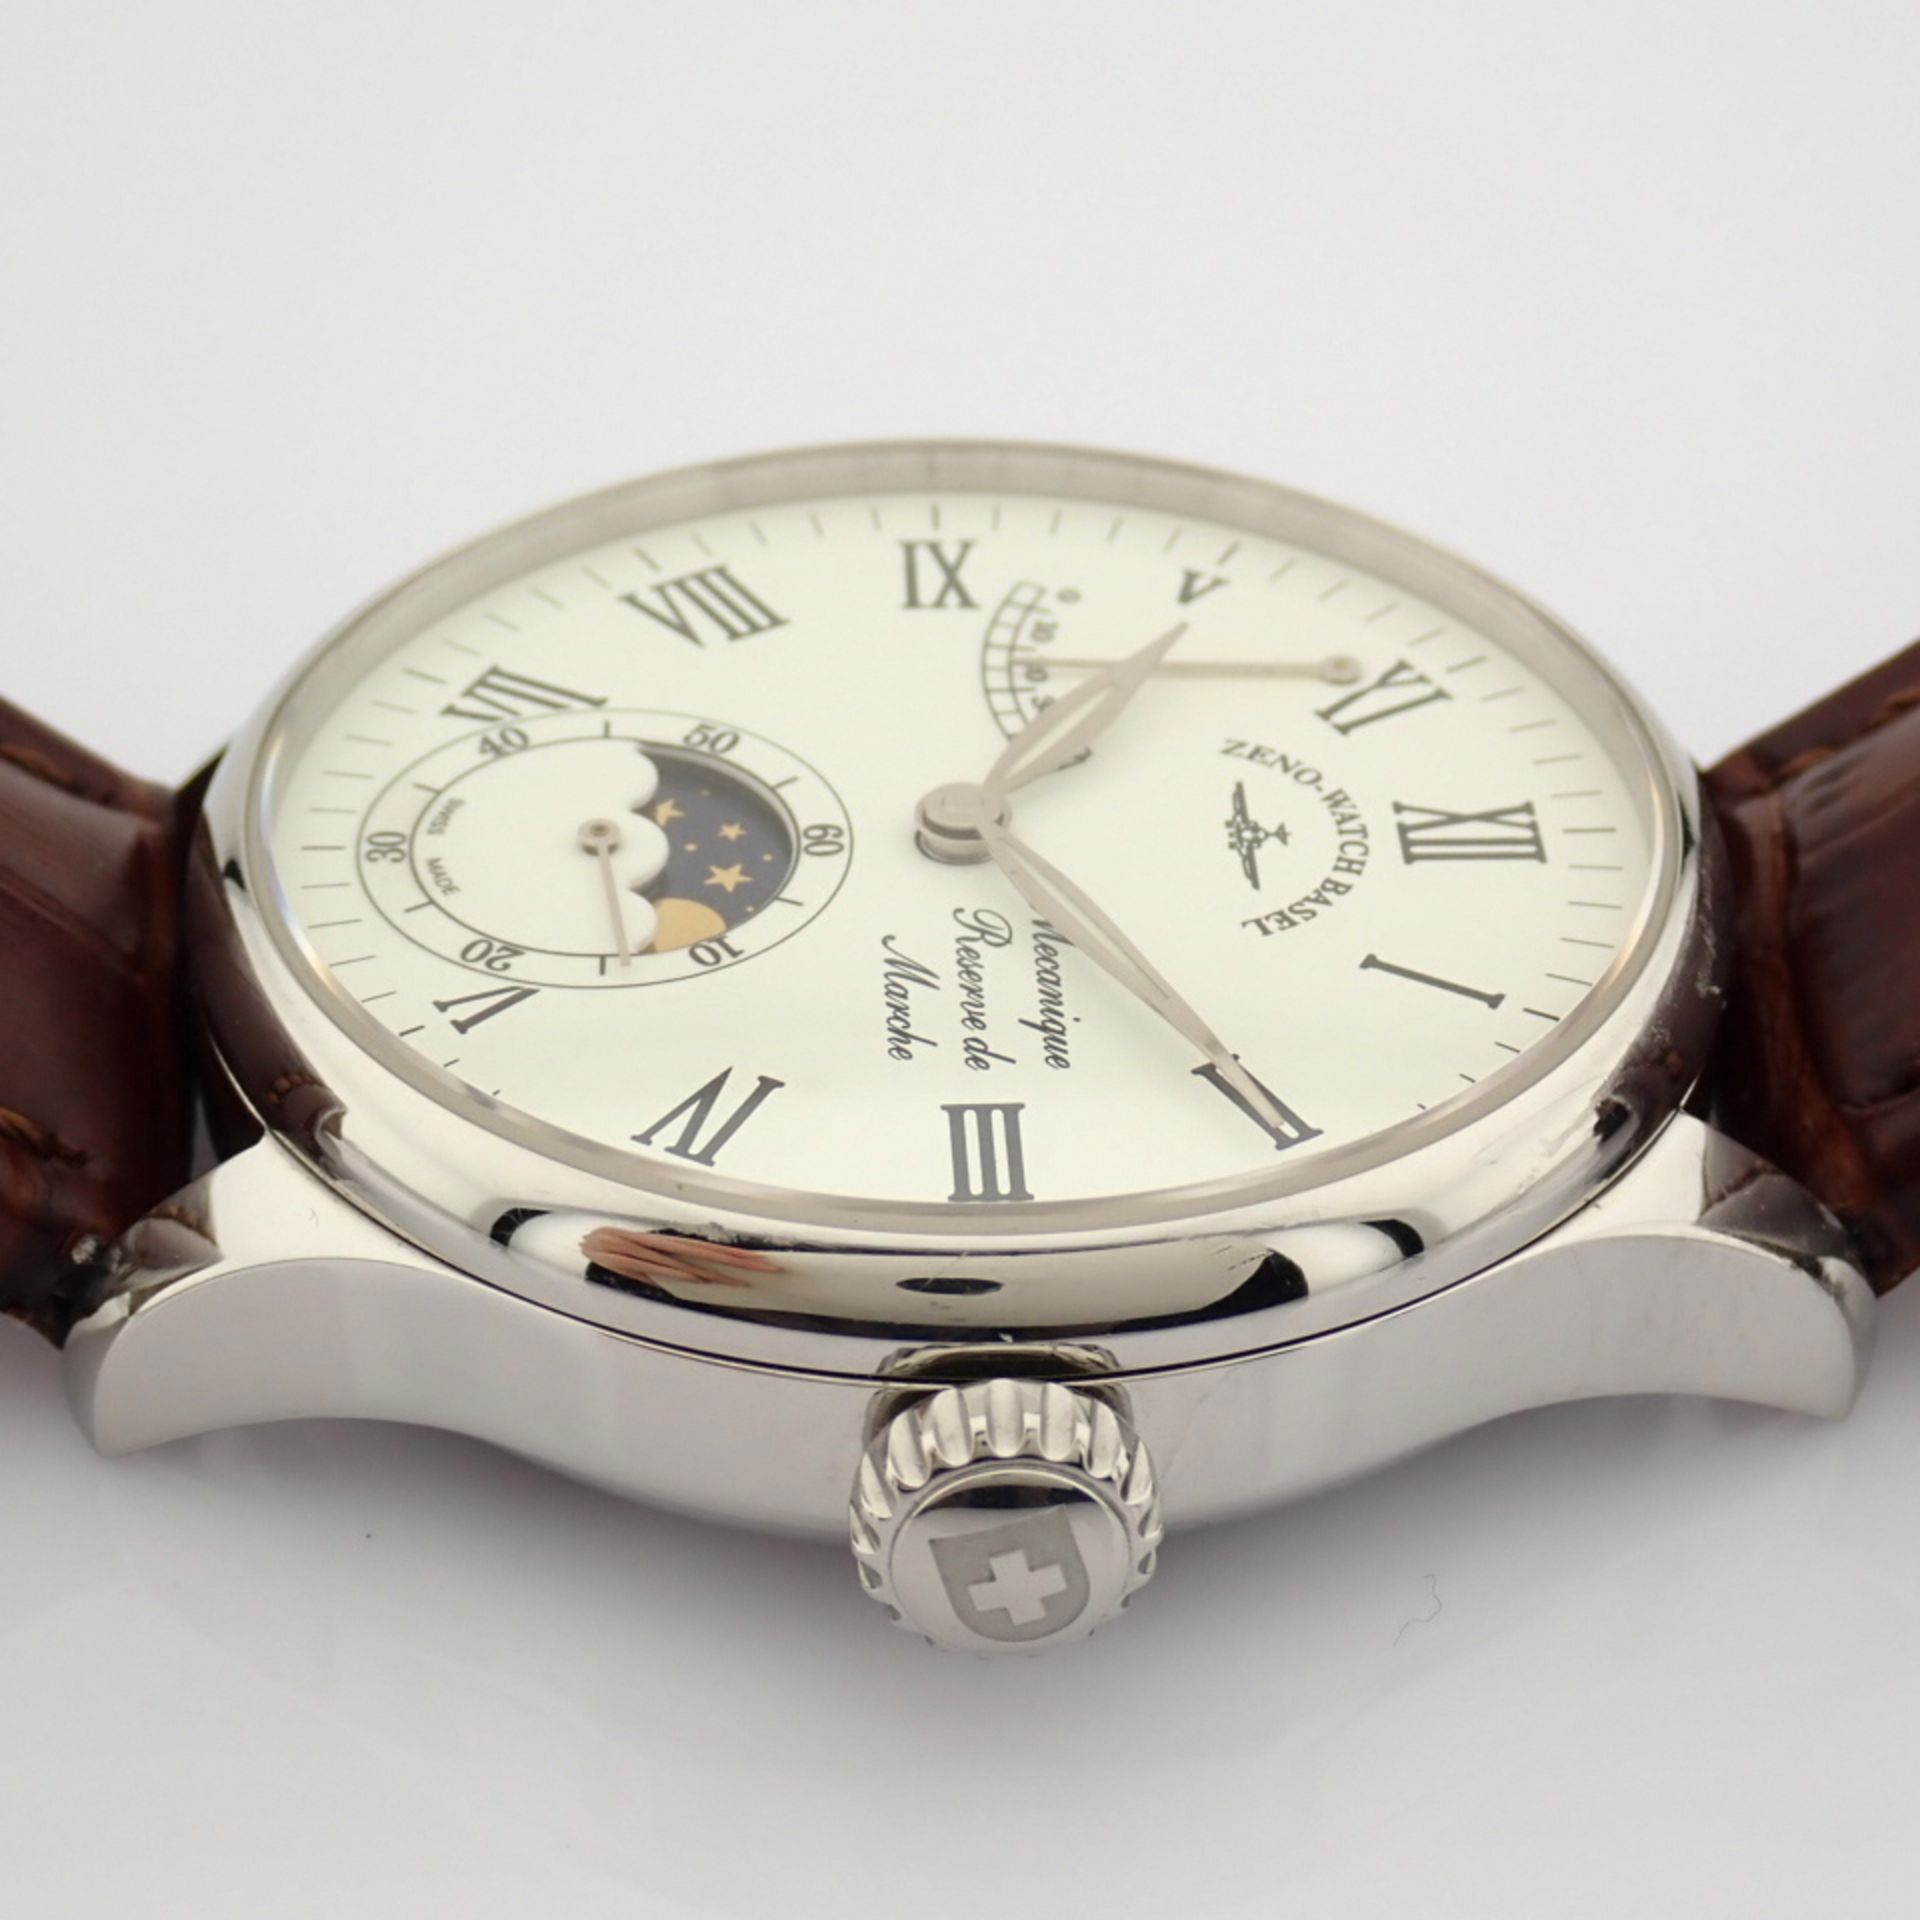 Zeno-Watch Basel / Godat II Roma Power Reserve - Gentlmen's Steel Wrist Watch - Image 10 of 12